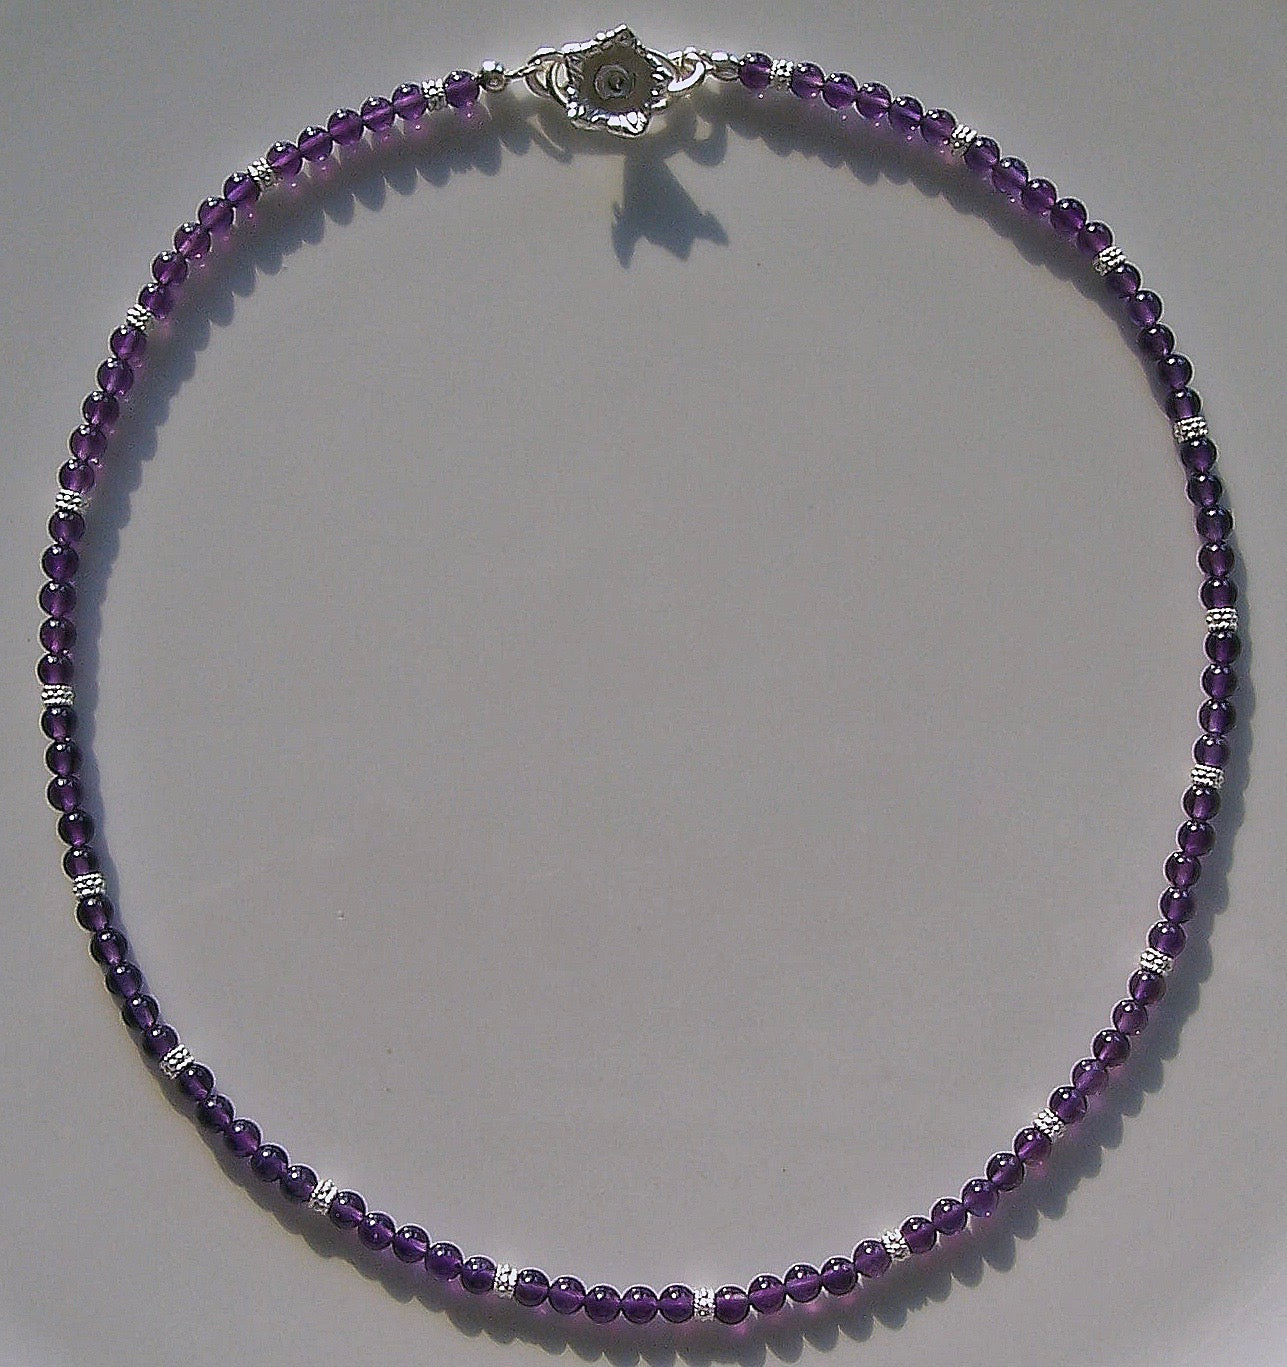 Arpaia "Violets" amethyst necklace